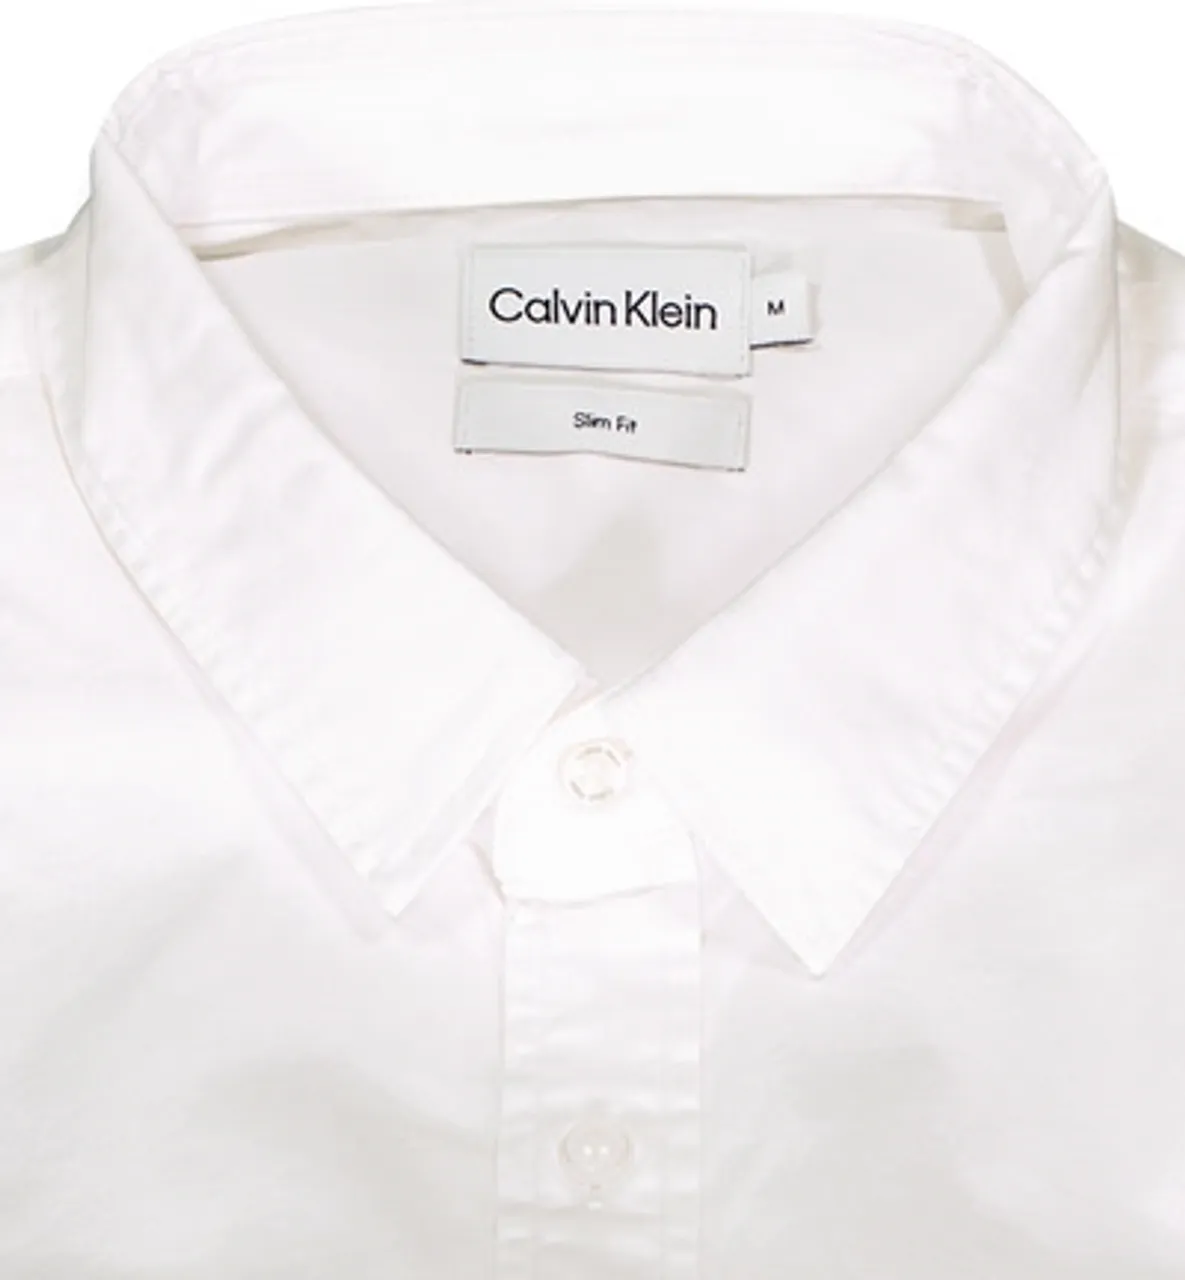 Calvin Klein Herren Hemd weiß Baumwoll-Stretch